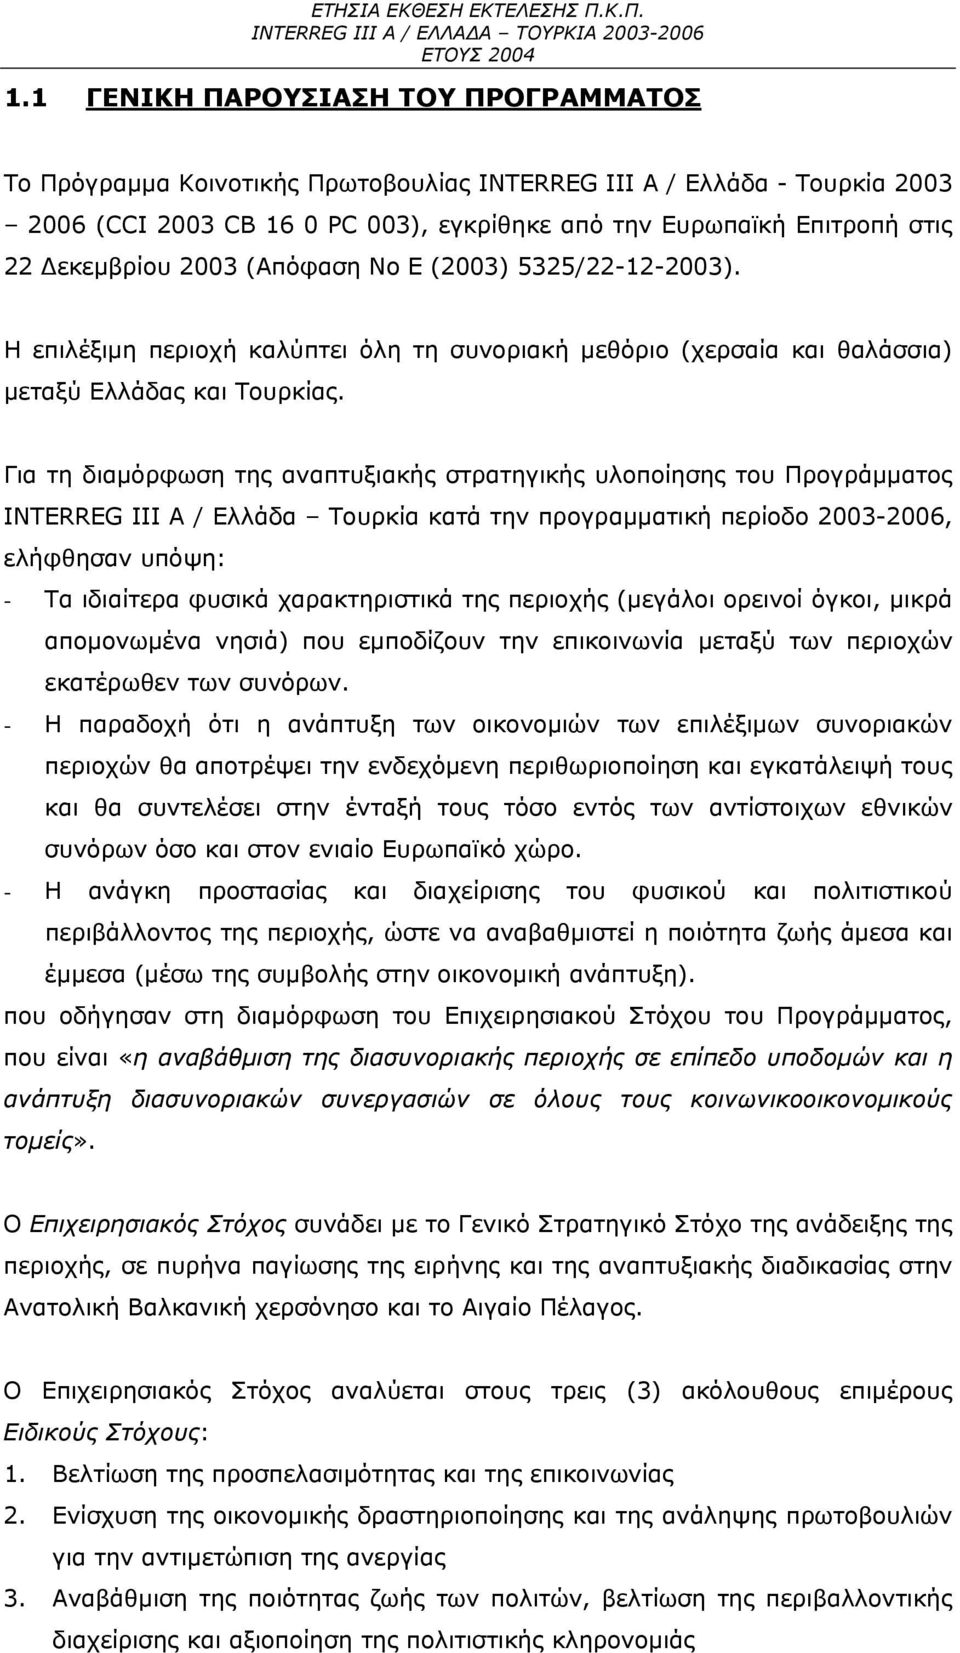 Για τη διαμόρφωση της αναπτυξιακής στρατηγικής υλοποίησης του Προγράμματος INTERREG III Α / Ελλάδα Τουρκία κατά την προγραμματική περίοδο 2003-2006, ελήφθησαν υπόψη: - Τα ιδιαίτερα φυσικά